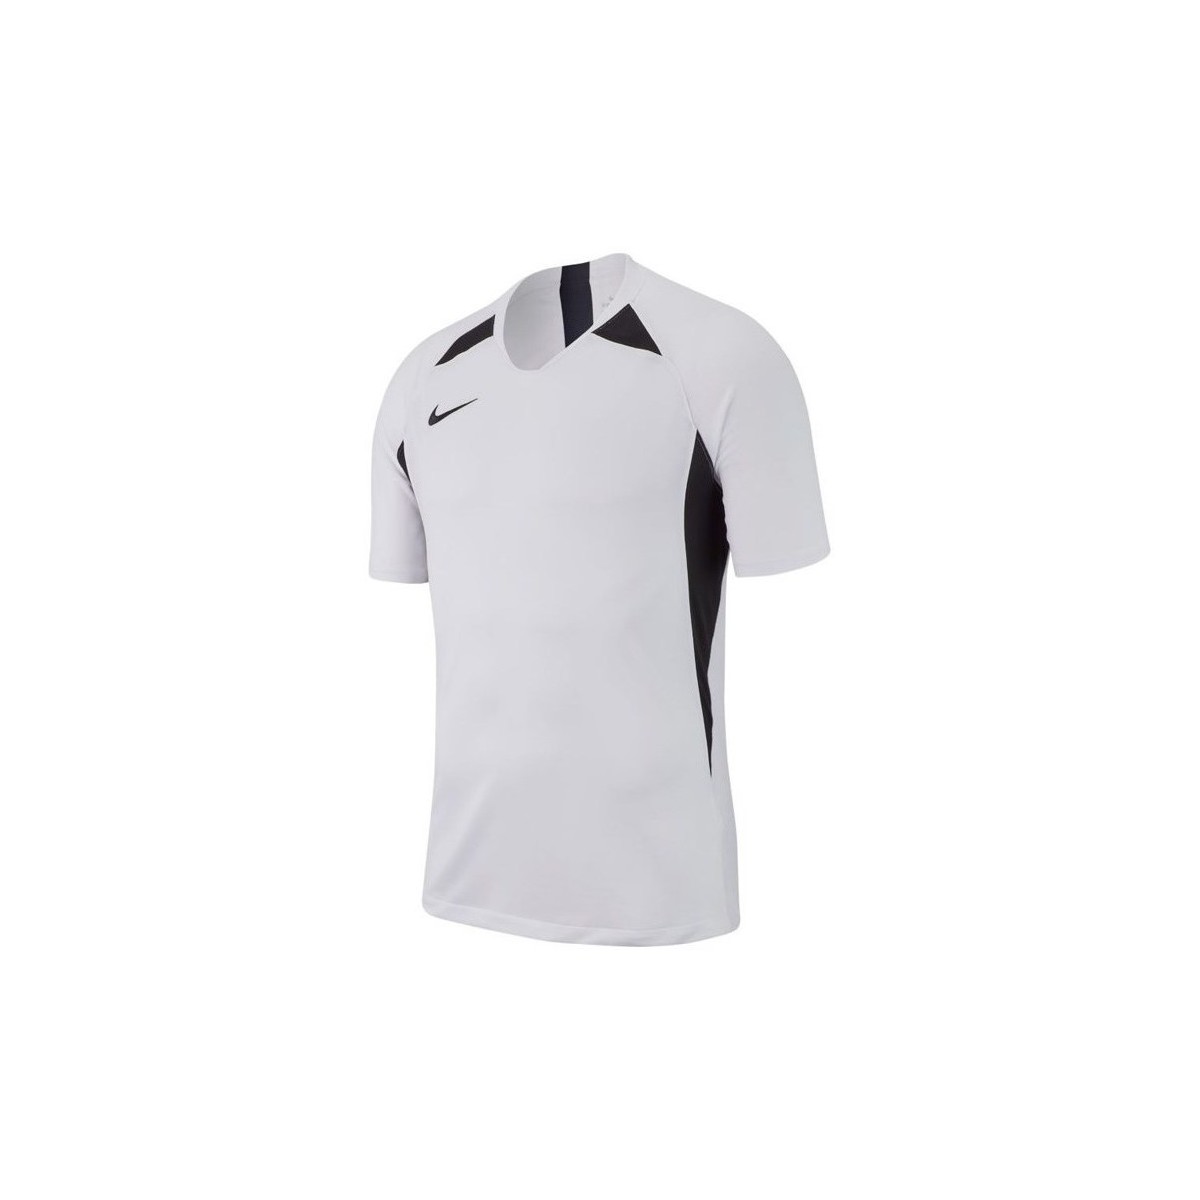 Textil Muži Trička s krátkým rukávem Nike Legend SS Jersey Bílá